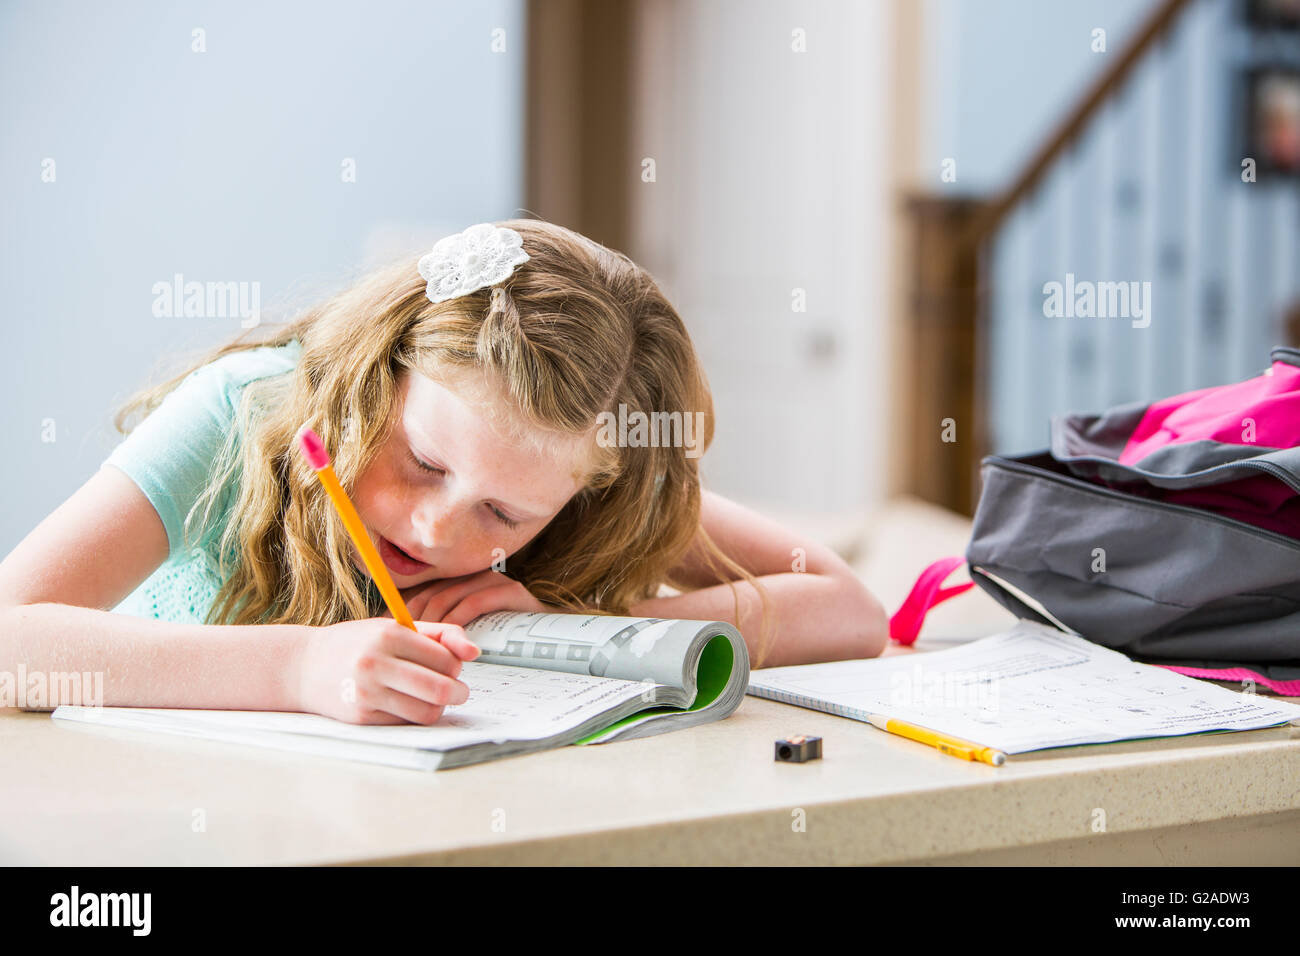 Girl (8-9) doing homework Stock Photo